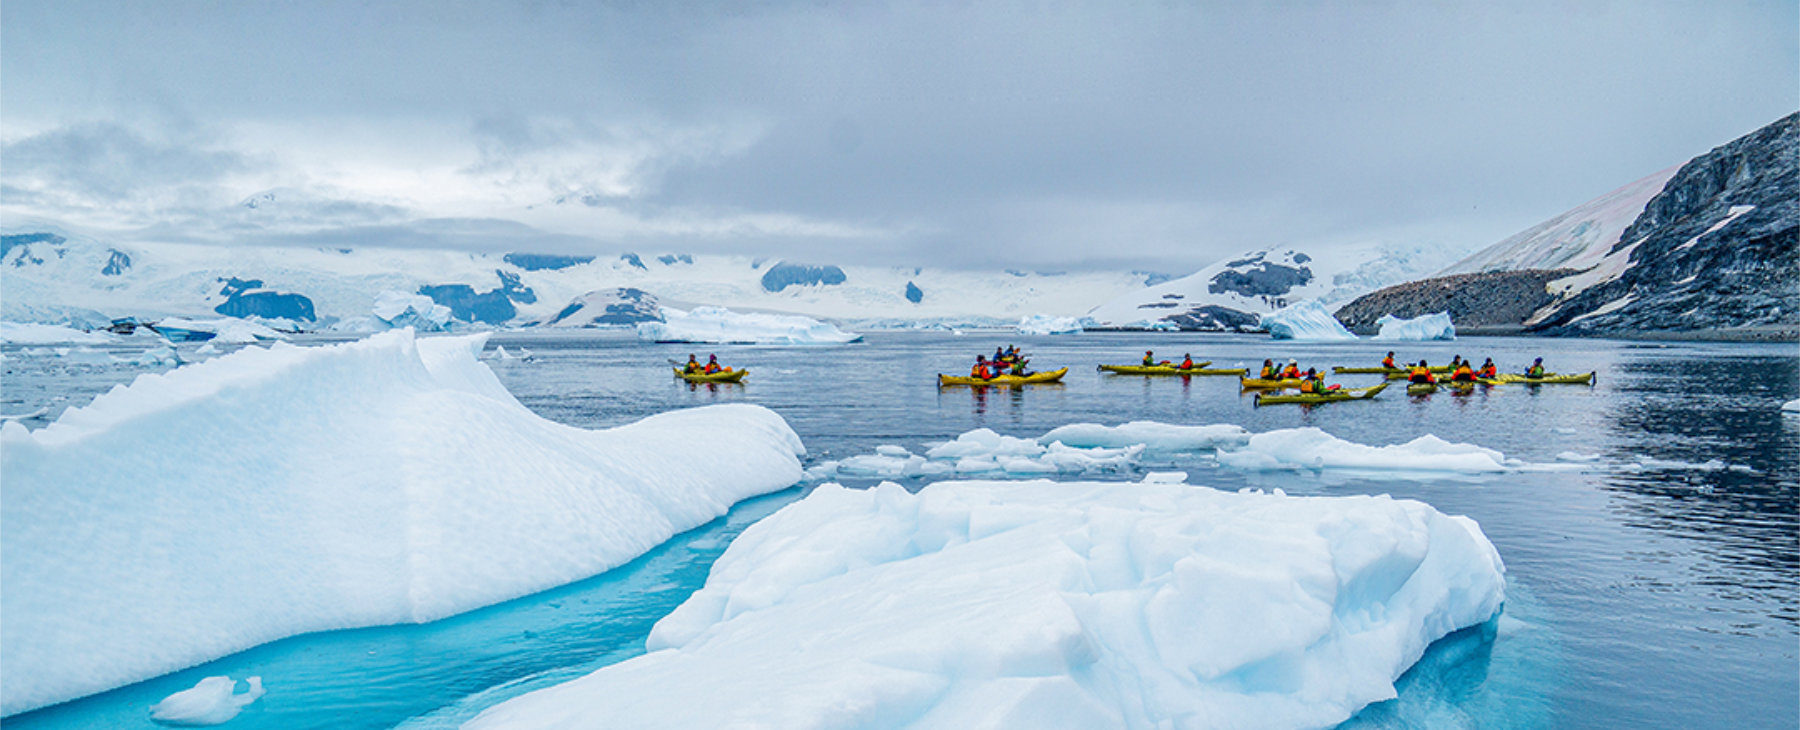 Luxusexpedition Quark Explorations Ultramarine Antarktis 6